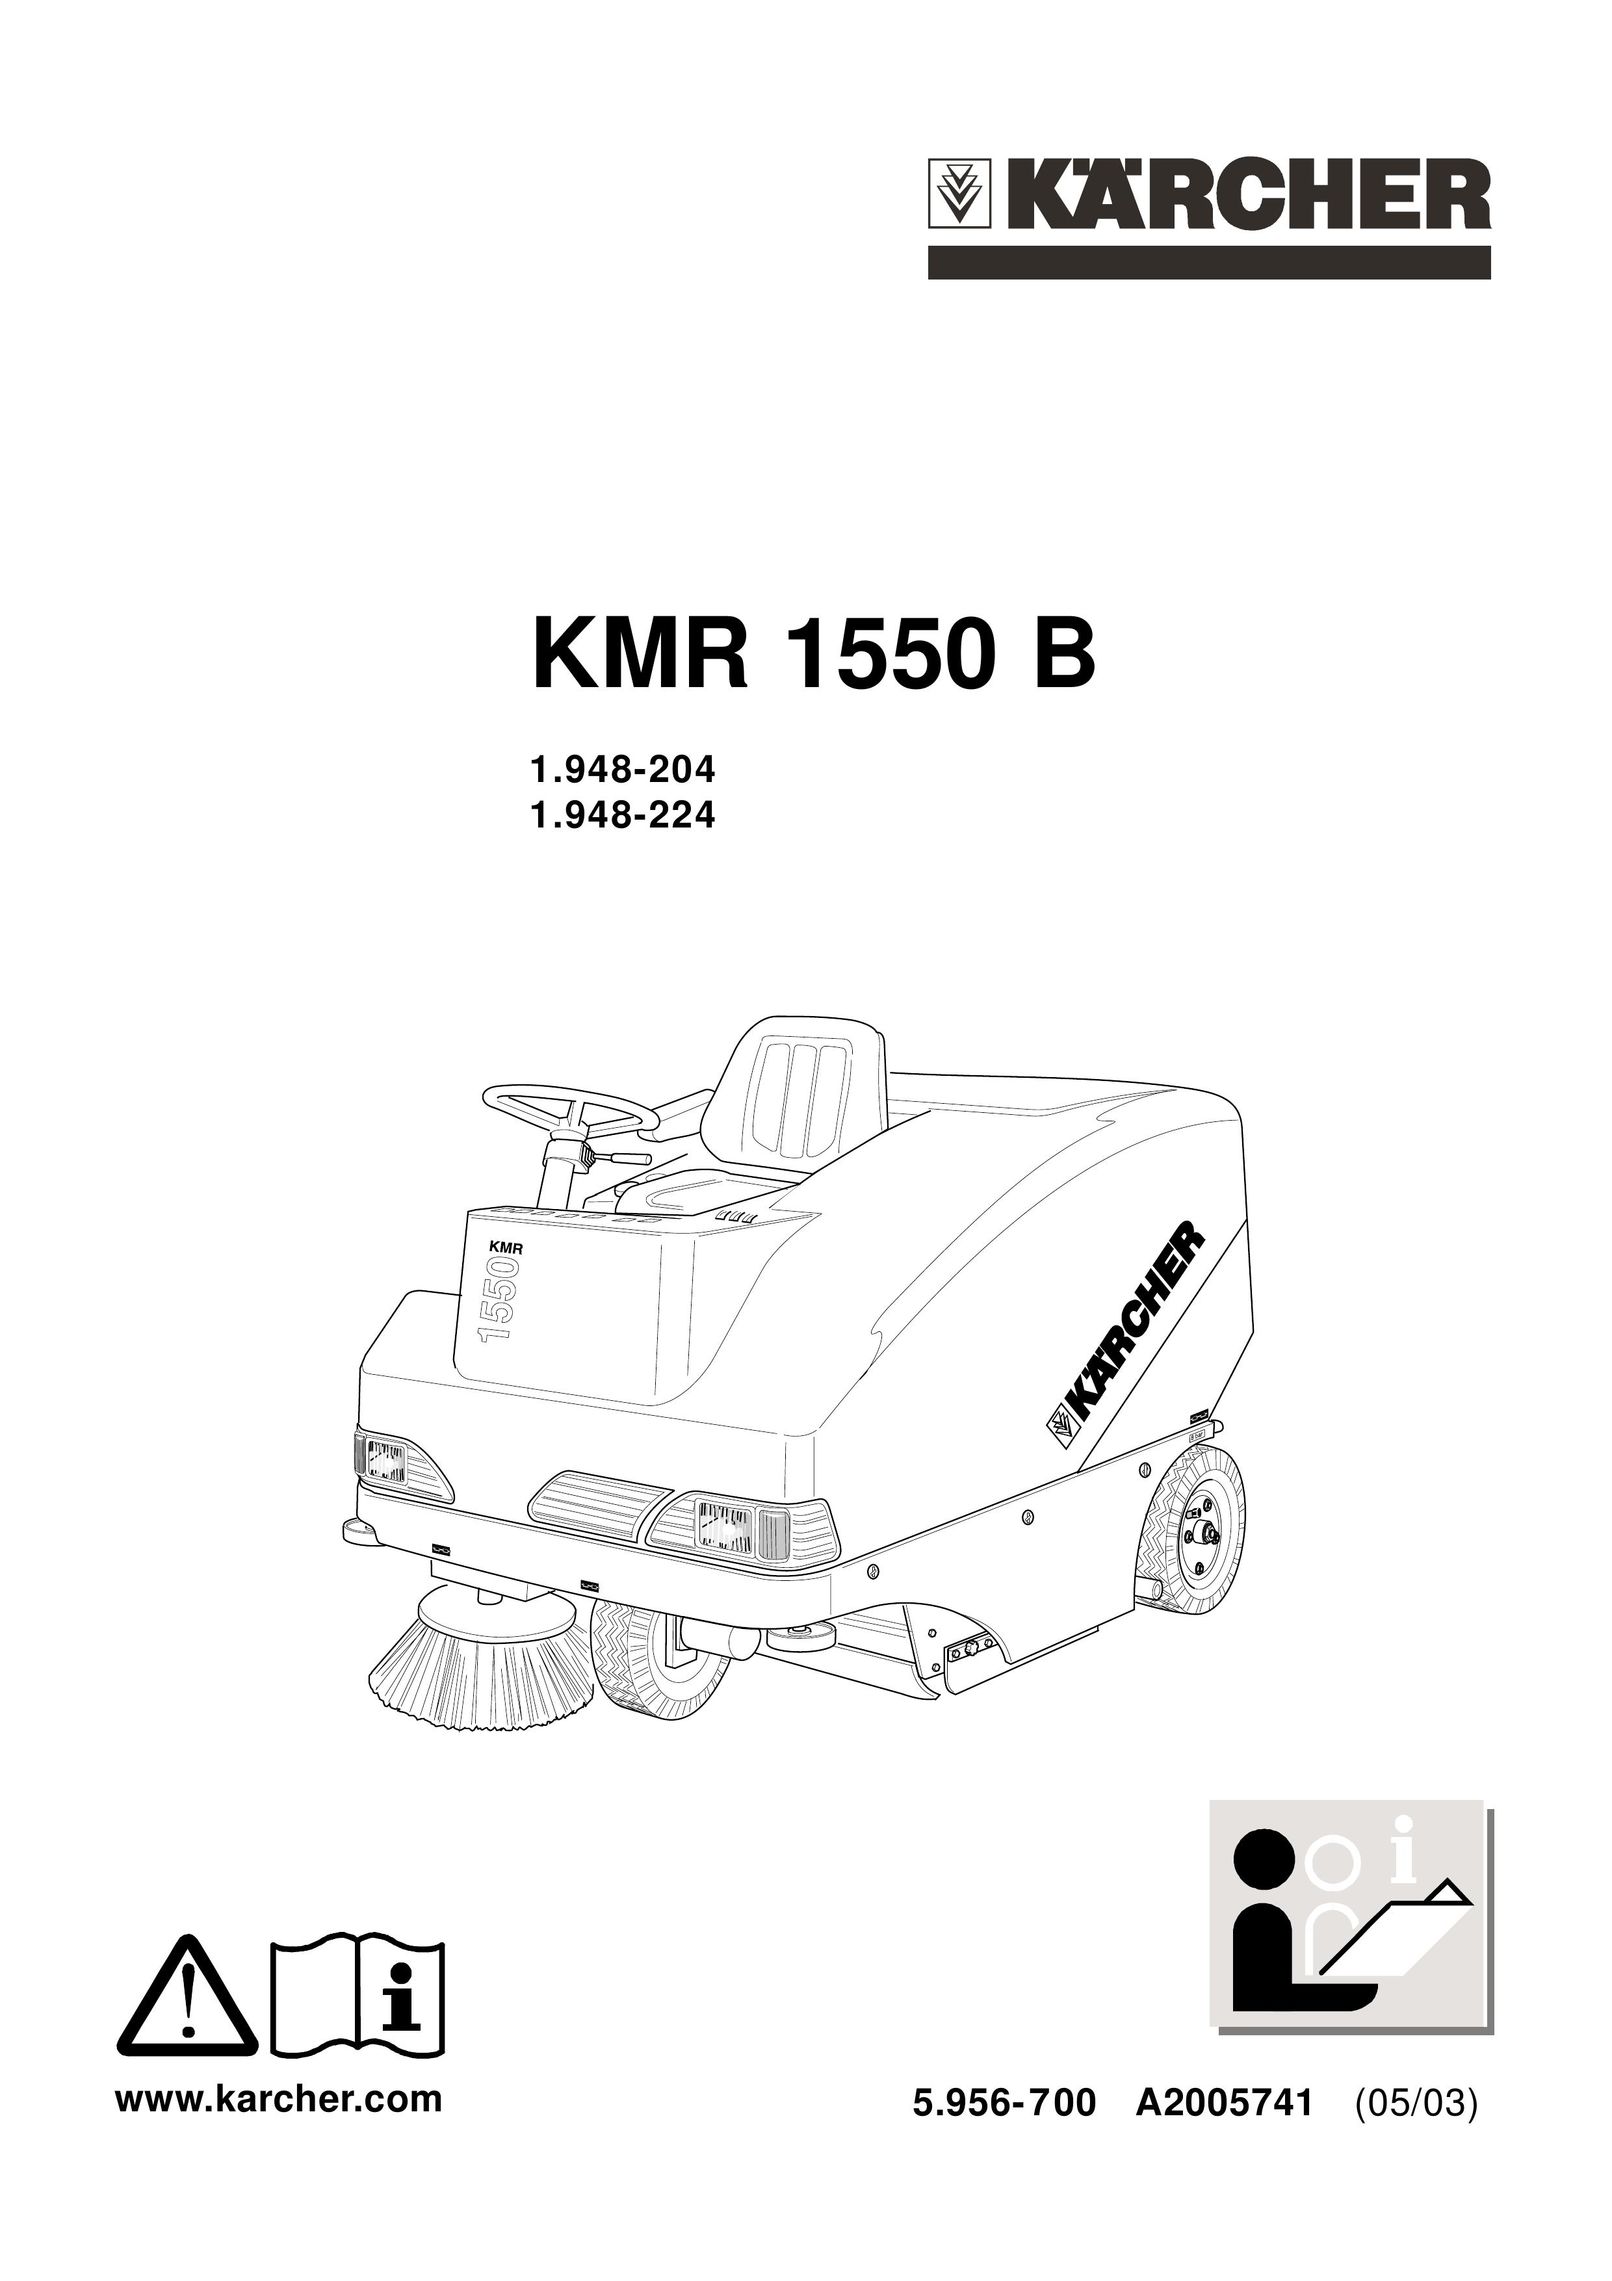 Karcher KMR 1550 B Carpet Cleaner User Manual